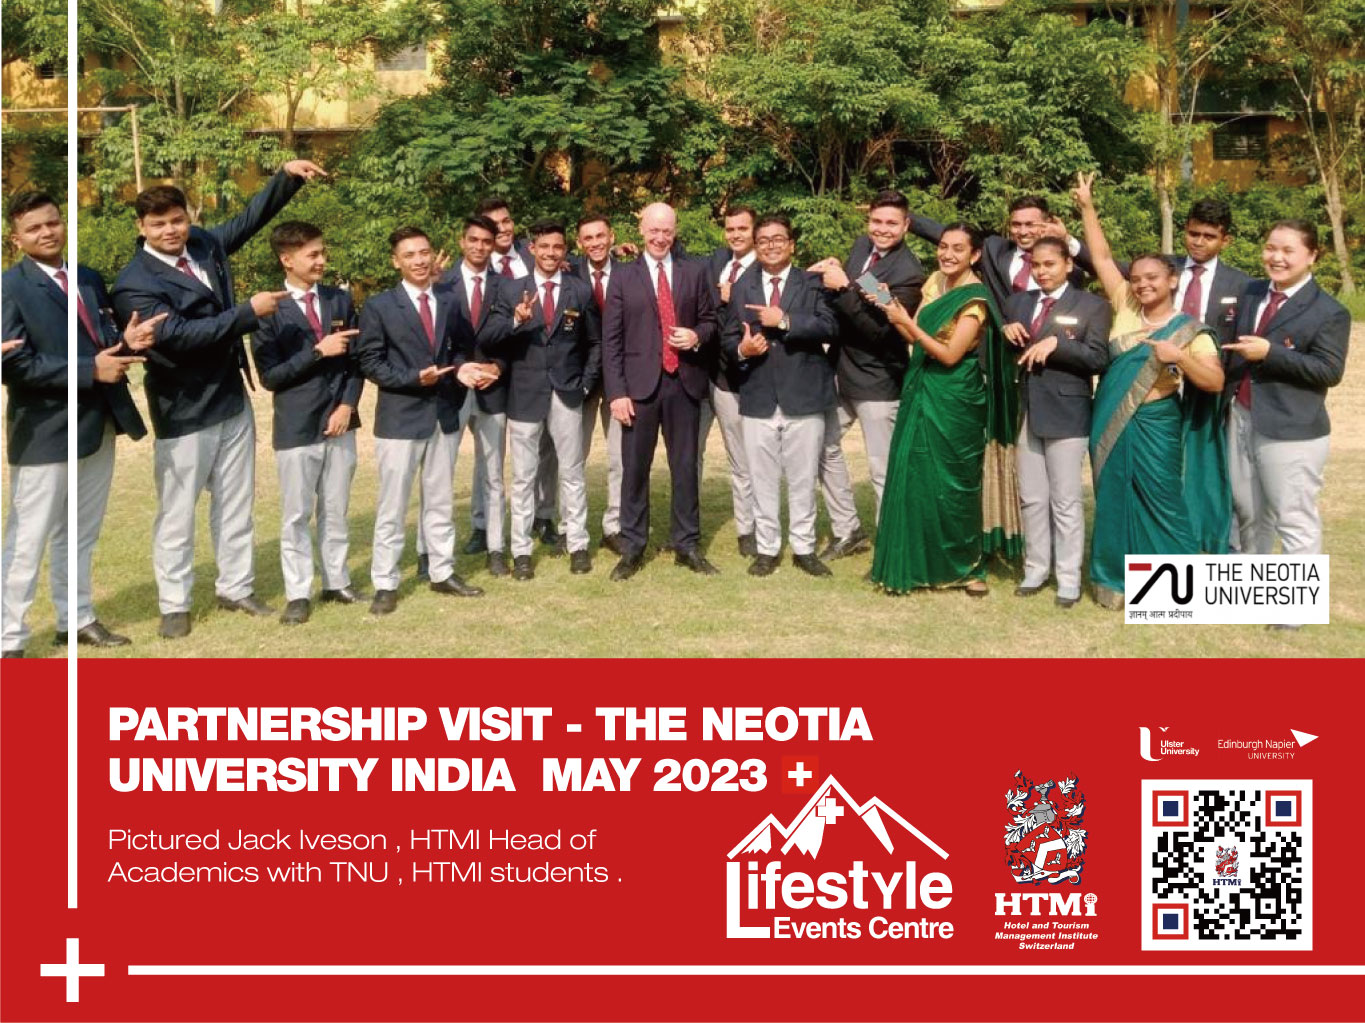 Partnership Visit - The Neotia University India - May 2023